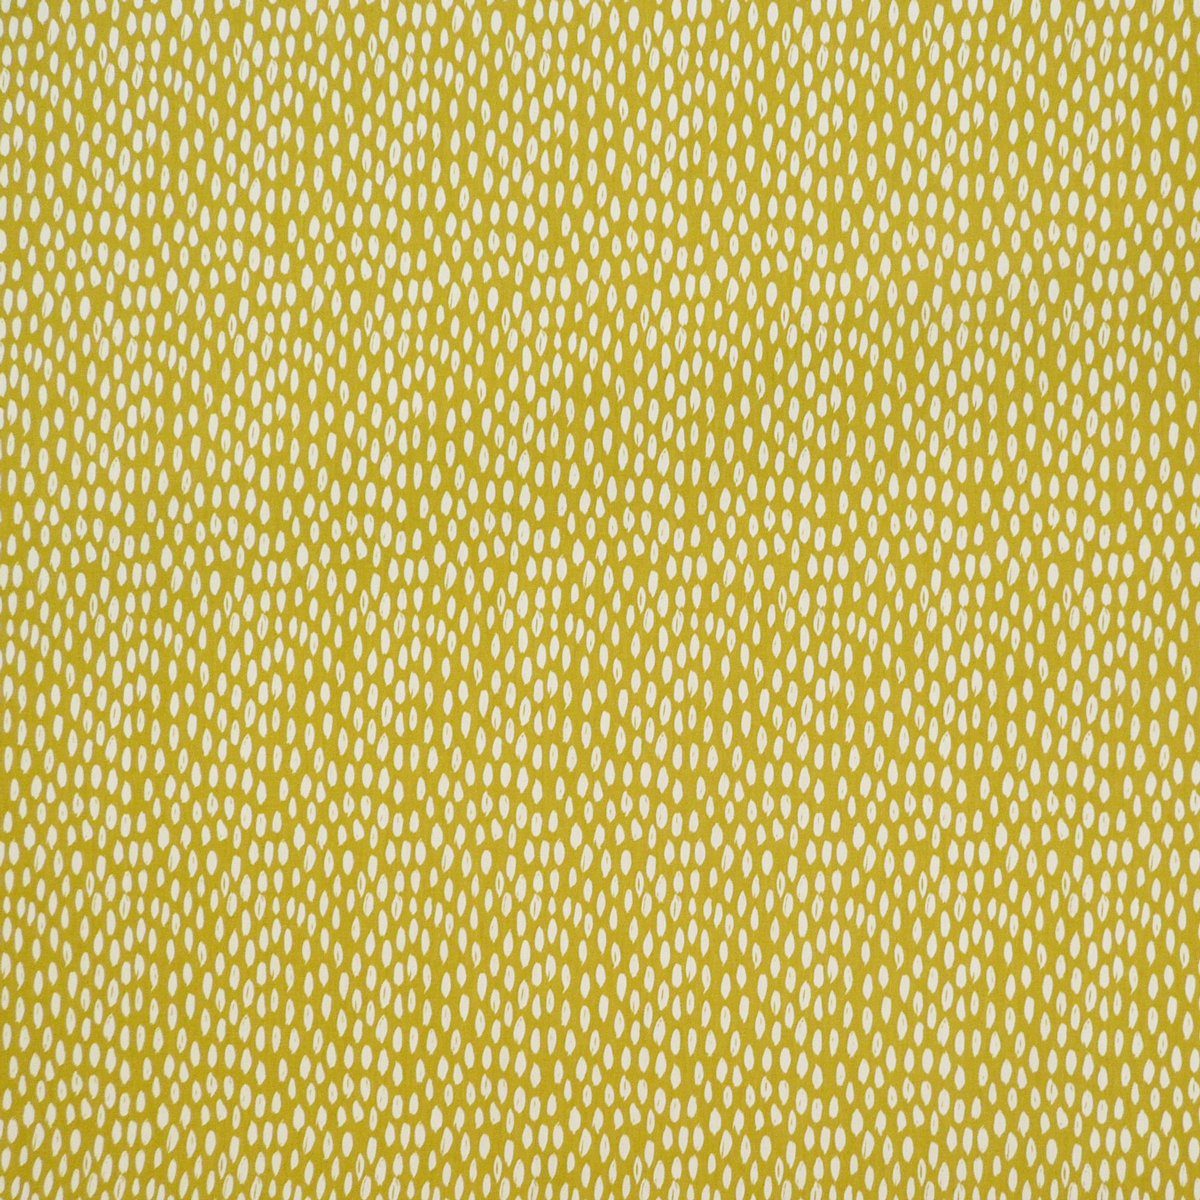 SCHÖNER LEBEN. Tischläufer Schöner Leben Bayside Tischläufer ocker gelb handmade Honeydew 40x160cm, weiß